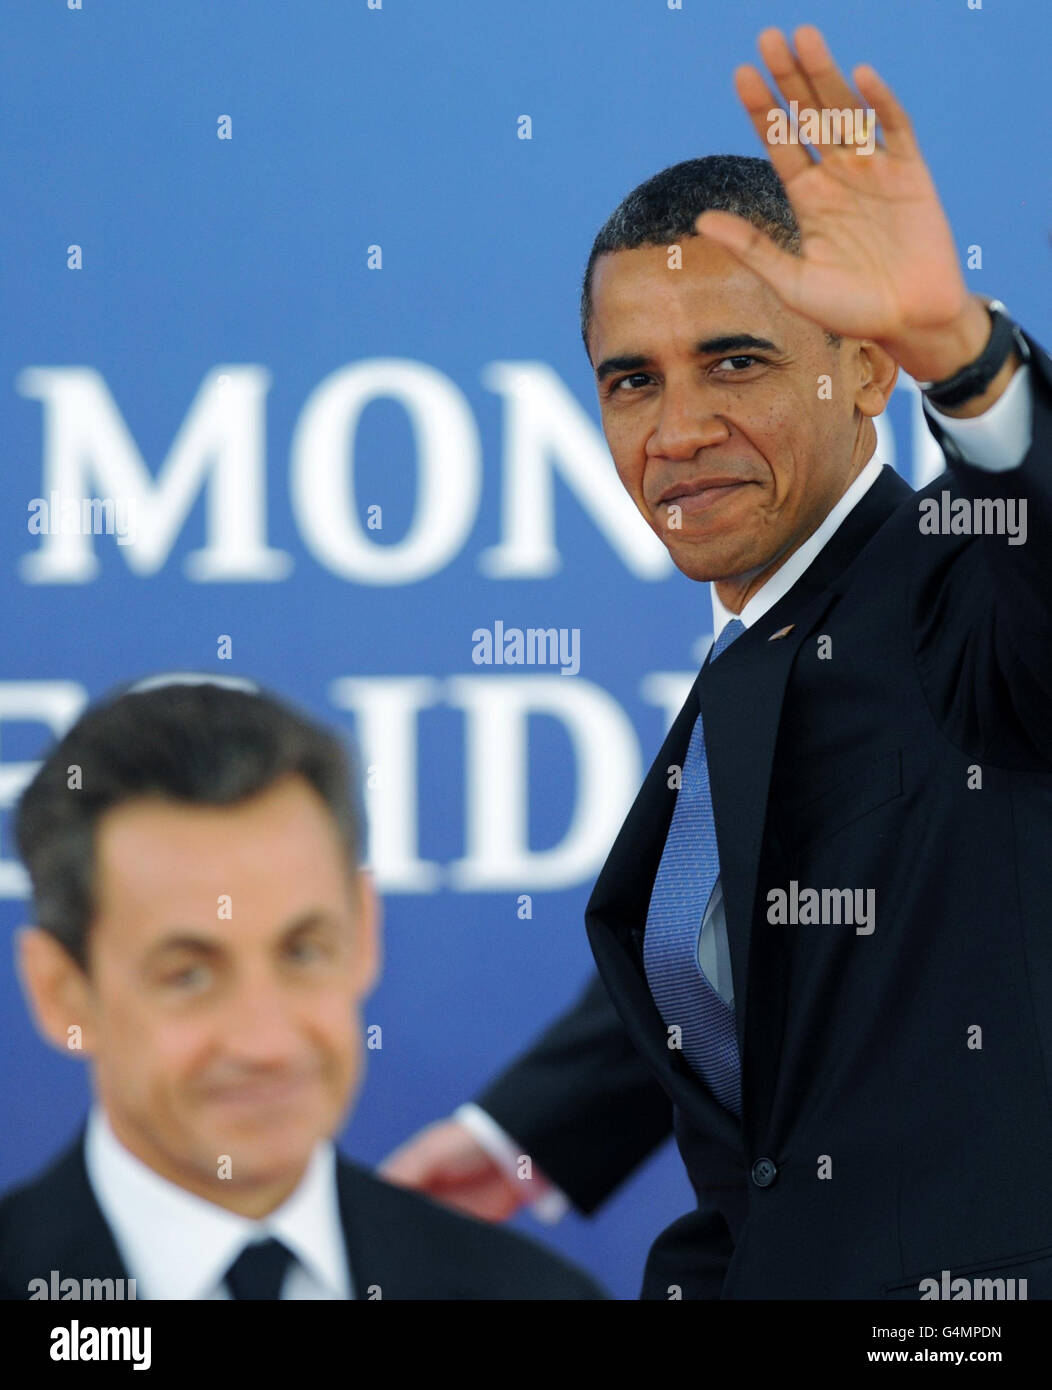 Il presidente francese Nicolas Sarkozy dà il benvenuto al presidente americano Obama al vertice del G20 a Cannes, Francia. Foto Stock